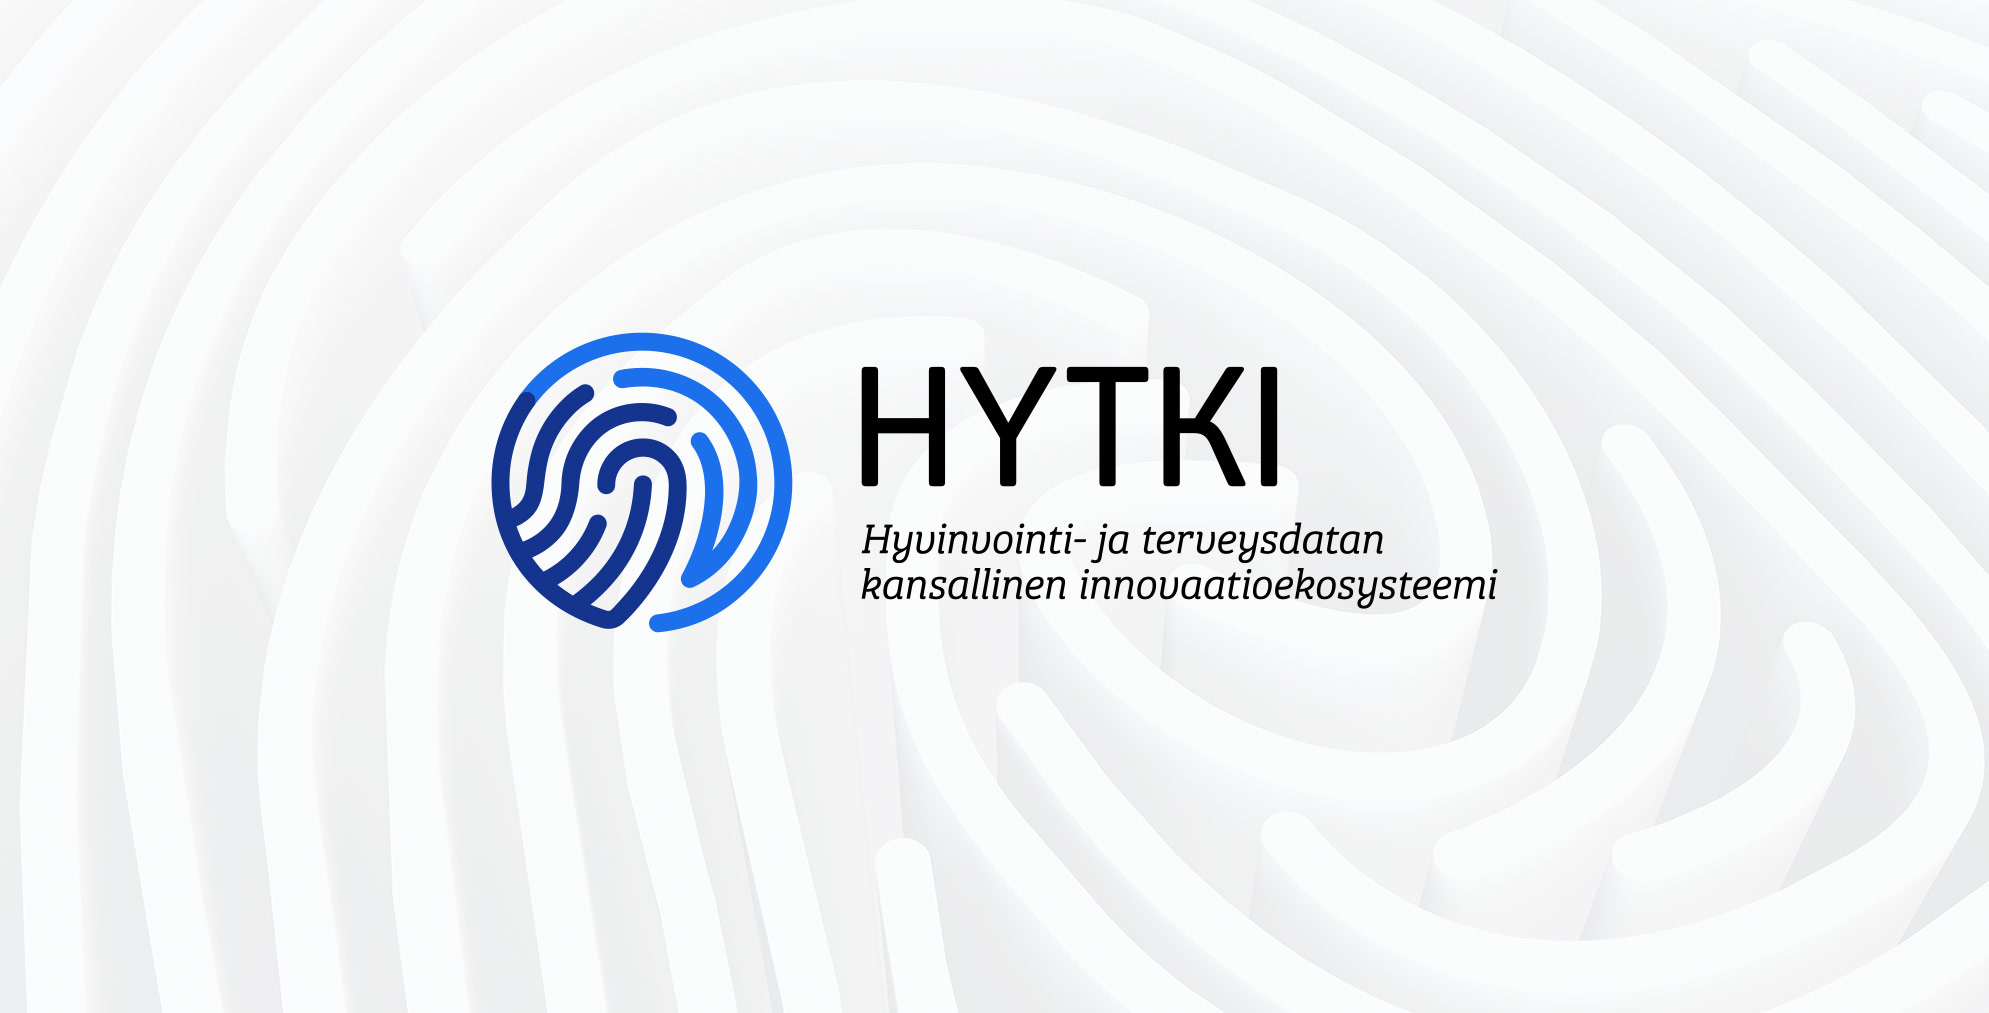 HYTKI Hyvinvointi- ja terveysdatan kansallinen ekosysteemi -logo.